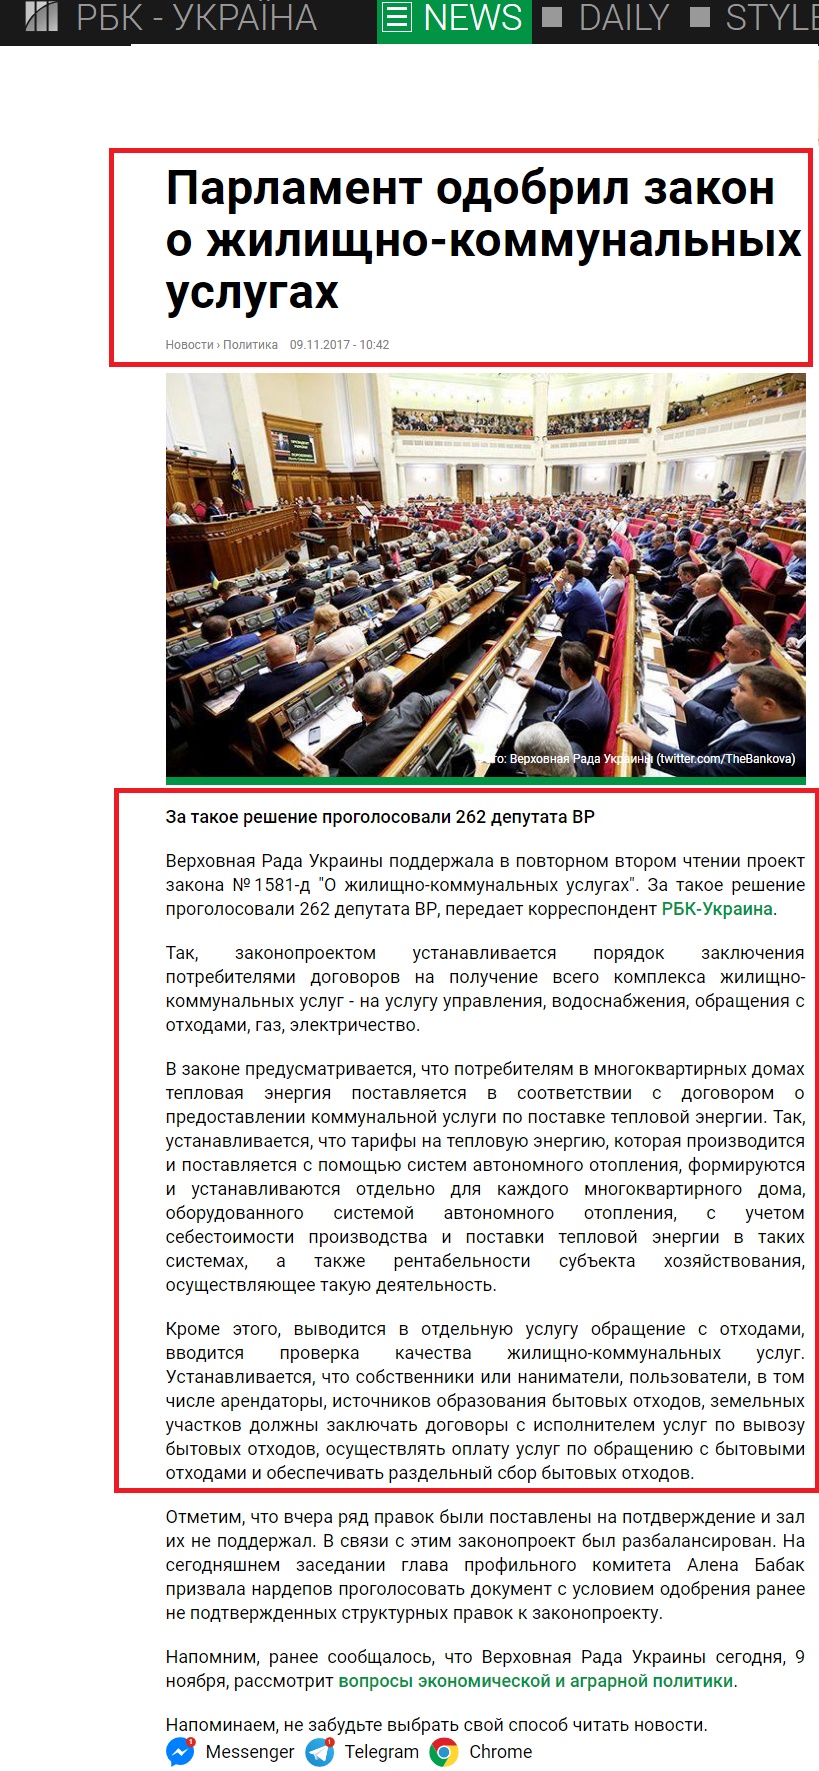 https://www.rbc.ua/ukr/news/parlament-odobril-zakon-zhilishchno-kommunalnyh-1510216909.html